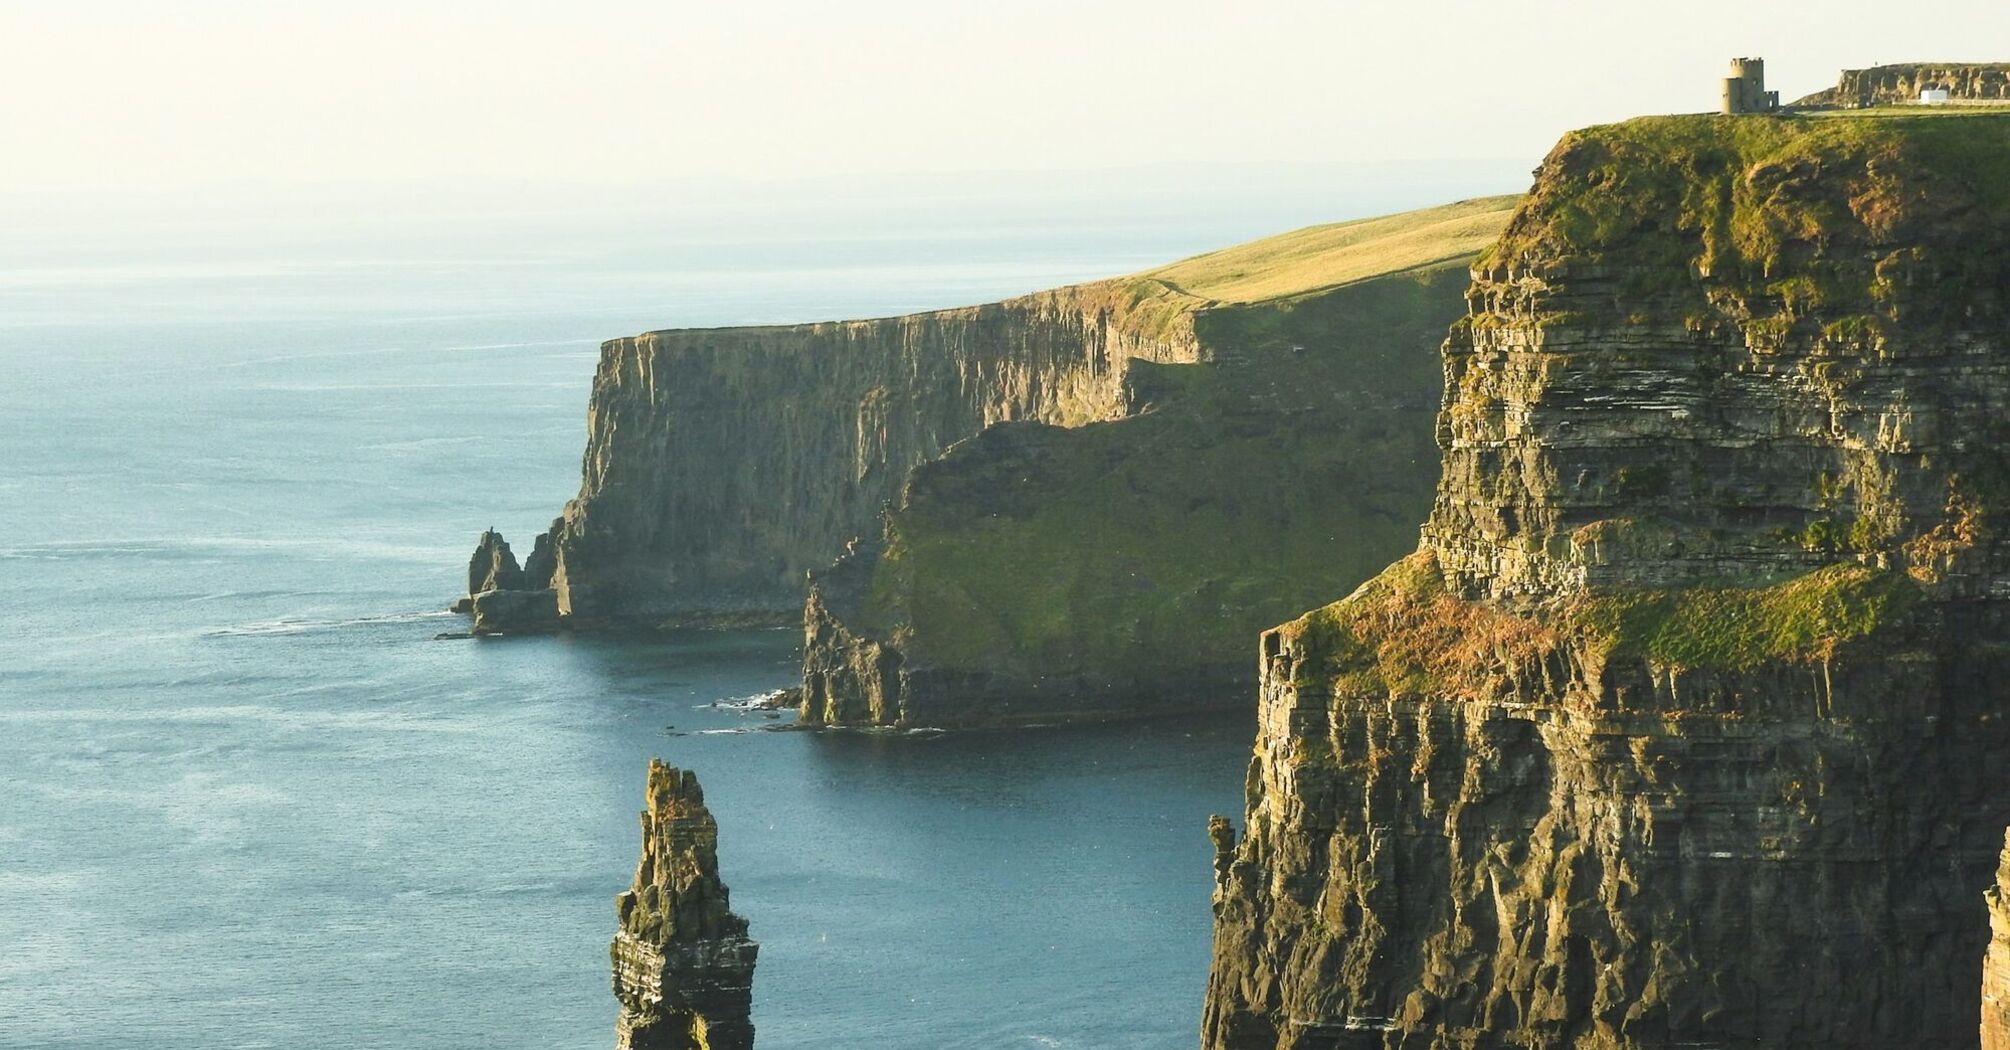 Sunlit Cliffs of Moher, Ireland, overlooking the Atlantic